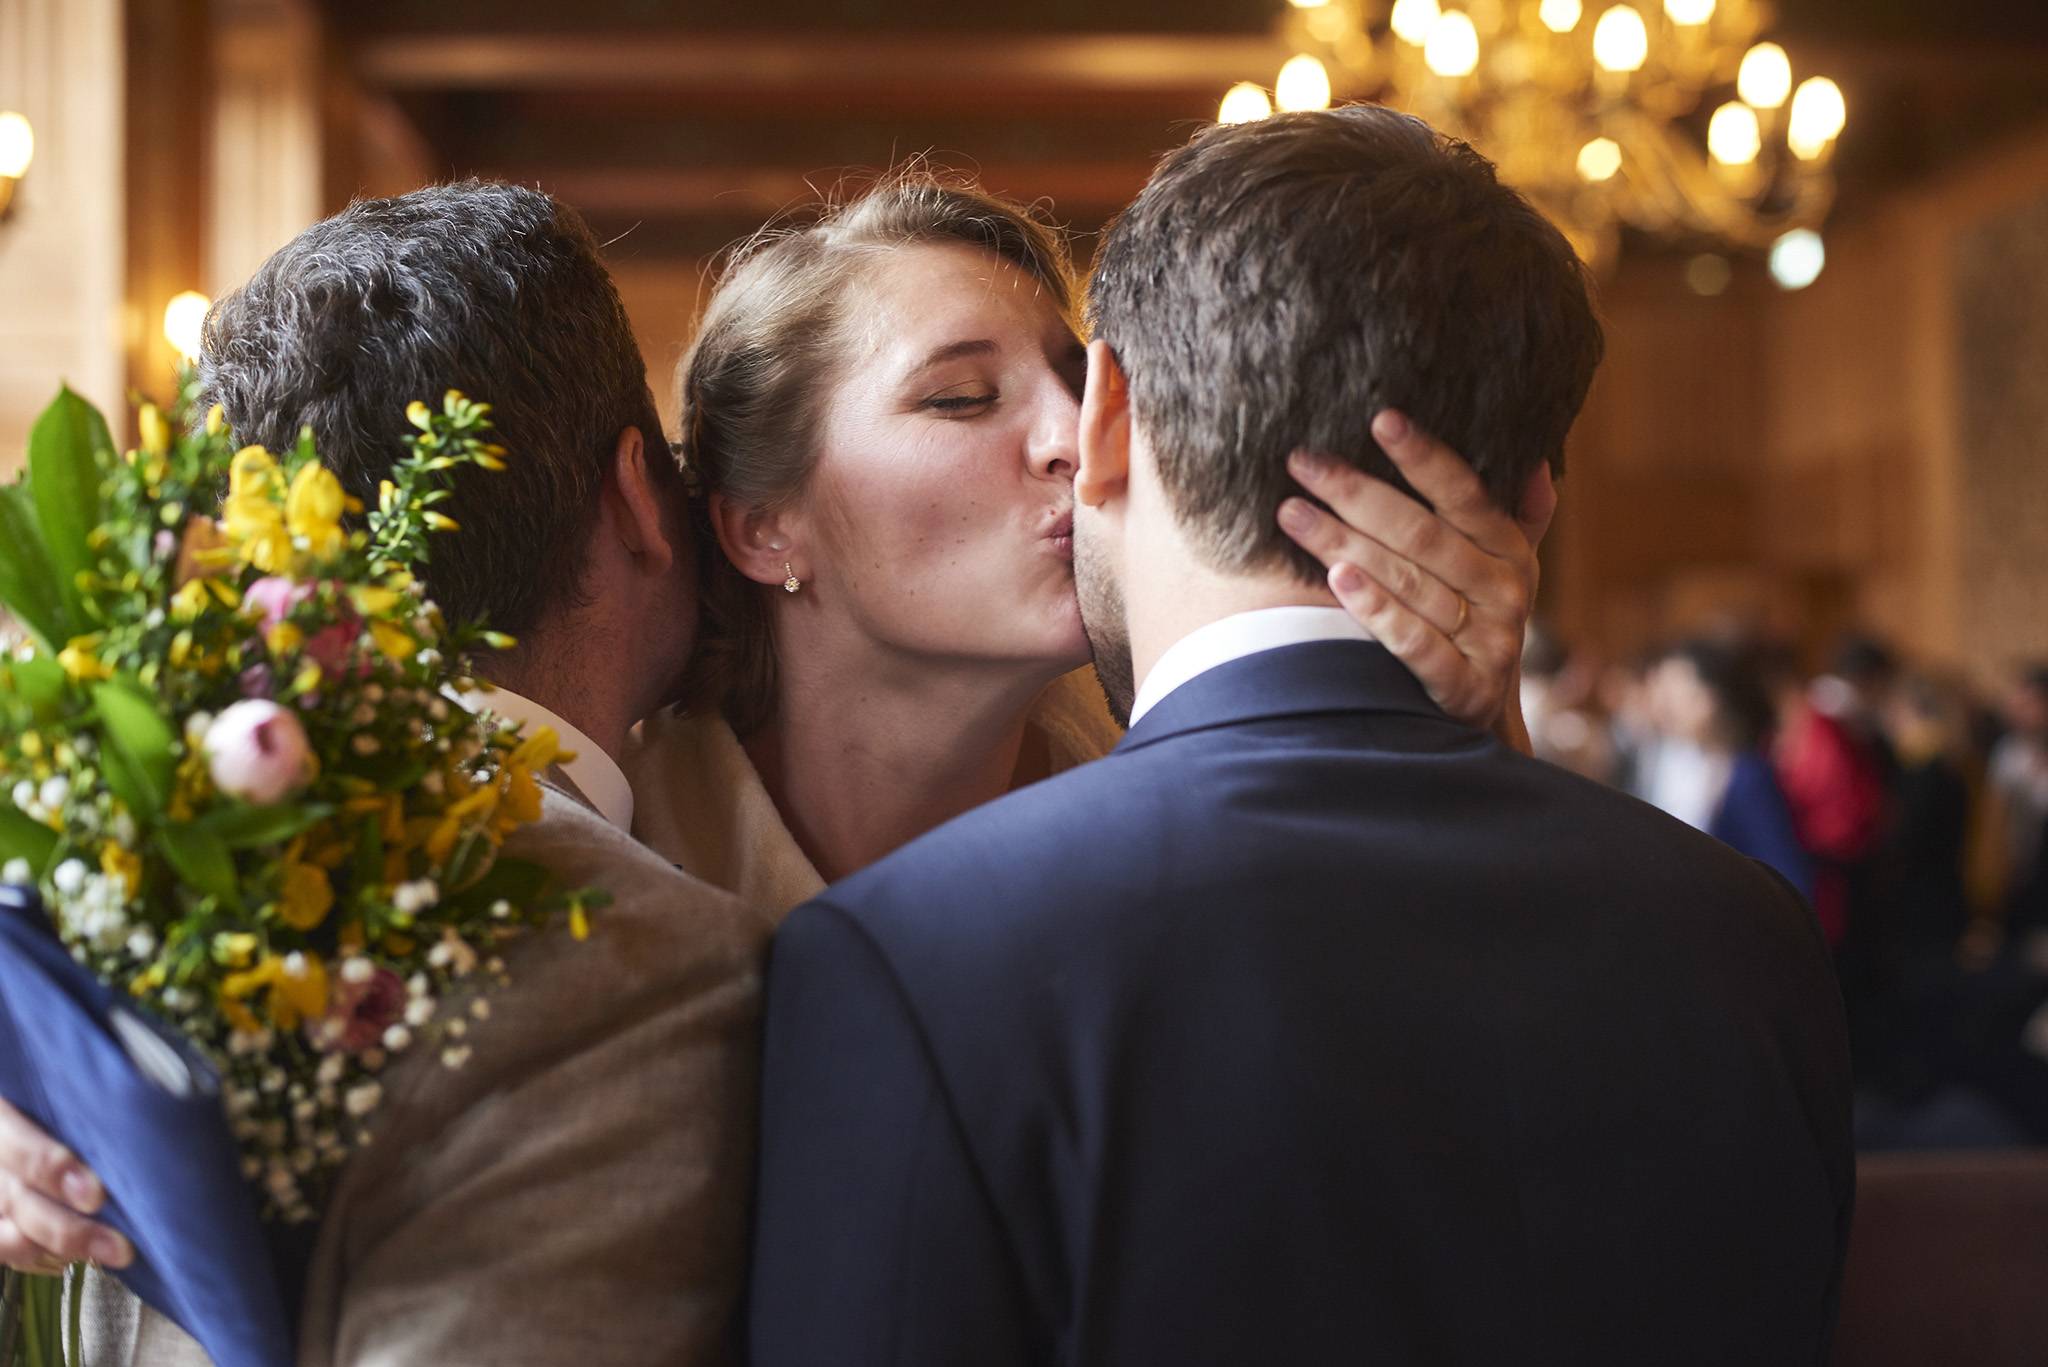 photographie de mariage ceremonie nantes rennes vannes angers - rudy burbant